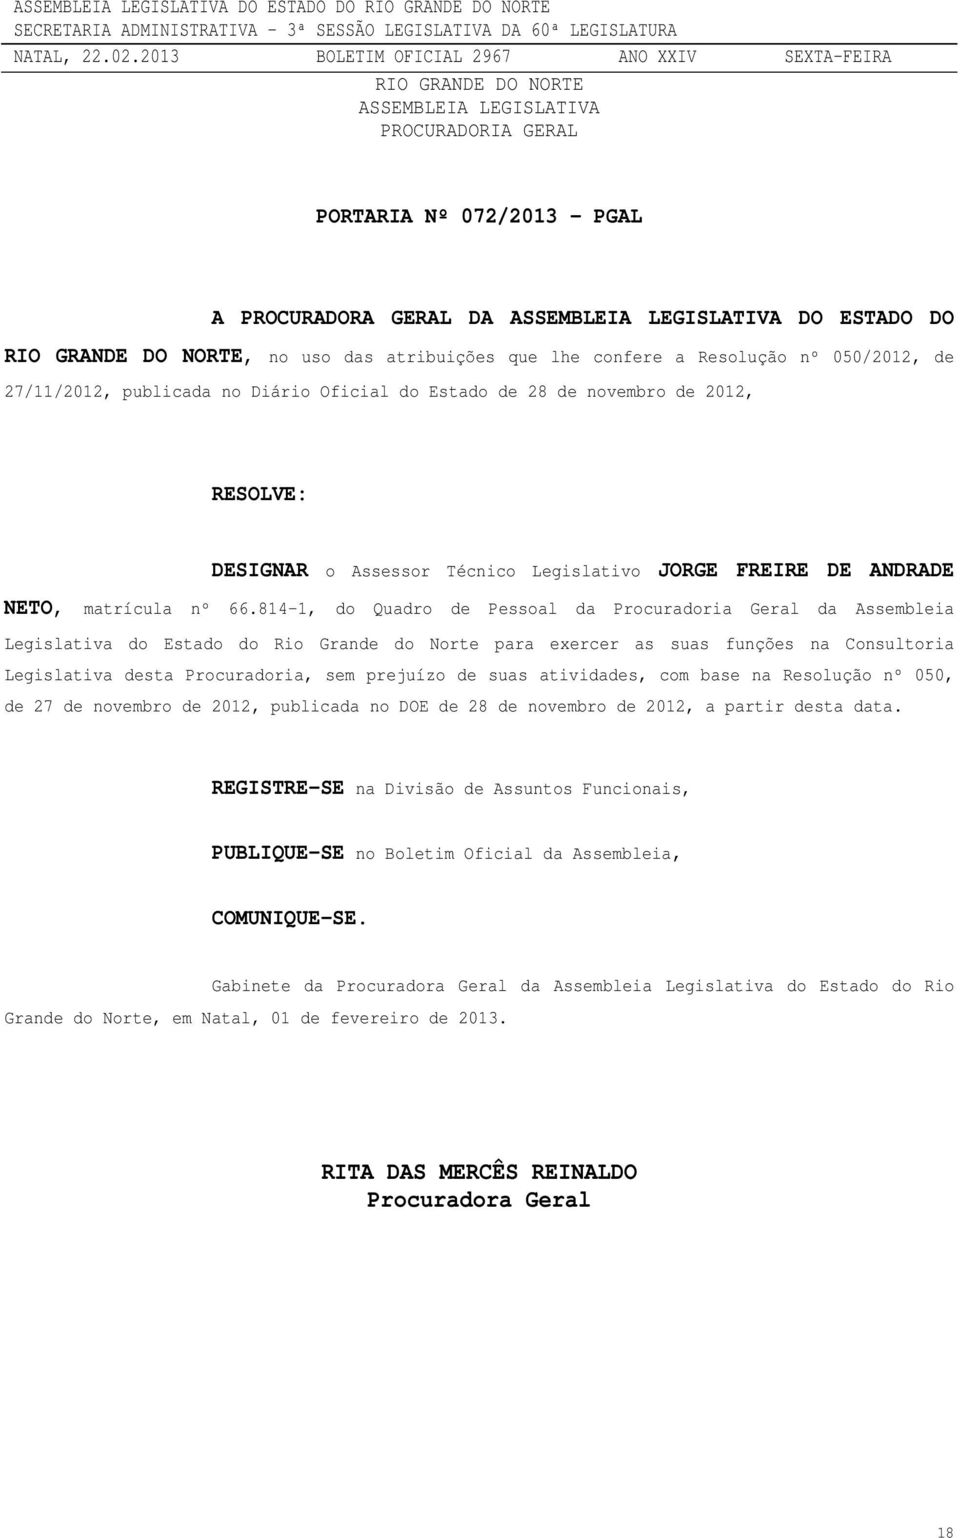 814-1, do Quadro de Pessoal da Procuradoria Geral da Assembleia Legislativa do Estado do Rio Grande do Norte para exercer as suas funções